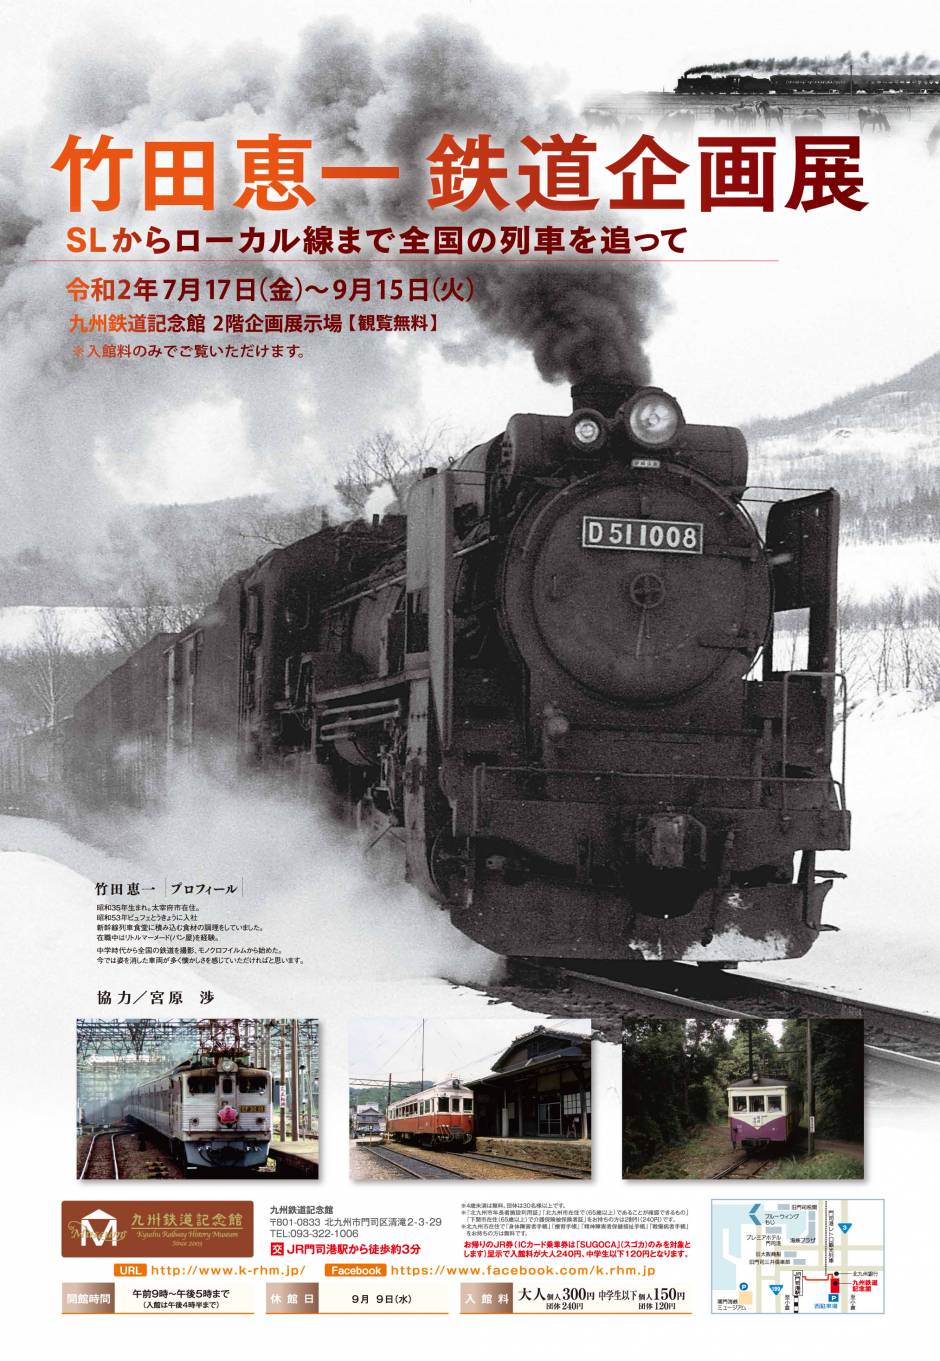 「竹田恵一鉄道企画展」開催について